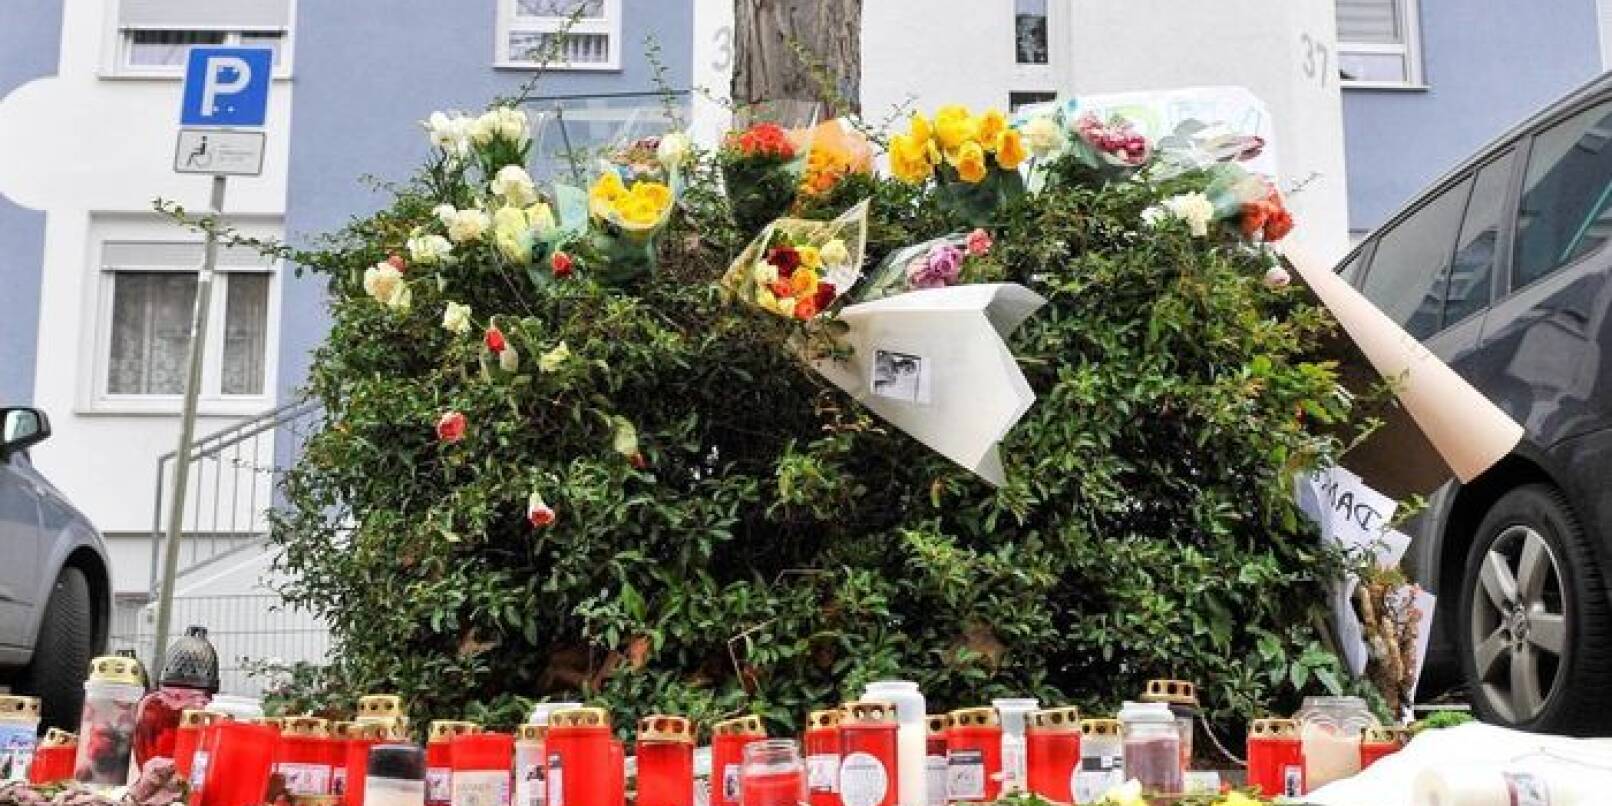 Am Tatort in der Johann-Schütte-Straße auf der Schönau erinnerten Kerzen, Grablichter, Blumen und Plakate an den getöteten Ertekin Ö.